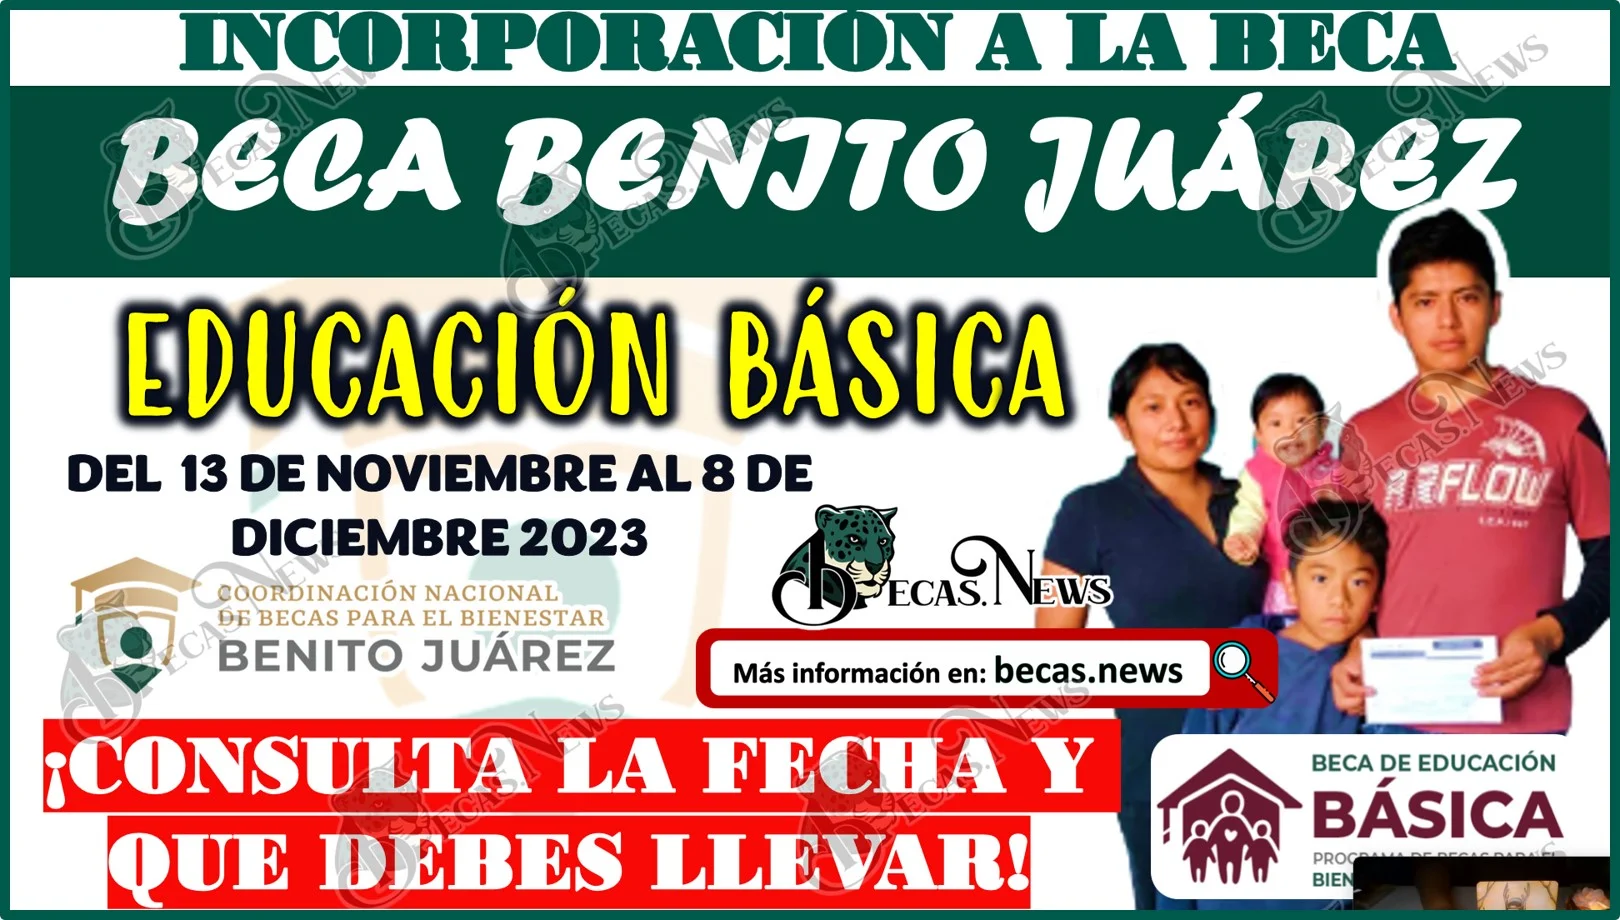 Becas Benito Juárez 2023 ¡Estudiantes de educación Básica consulta la fecha en la que te toca acudir para incorporarte al programa!